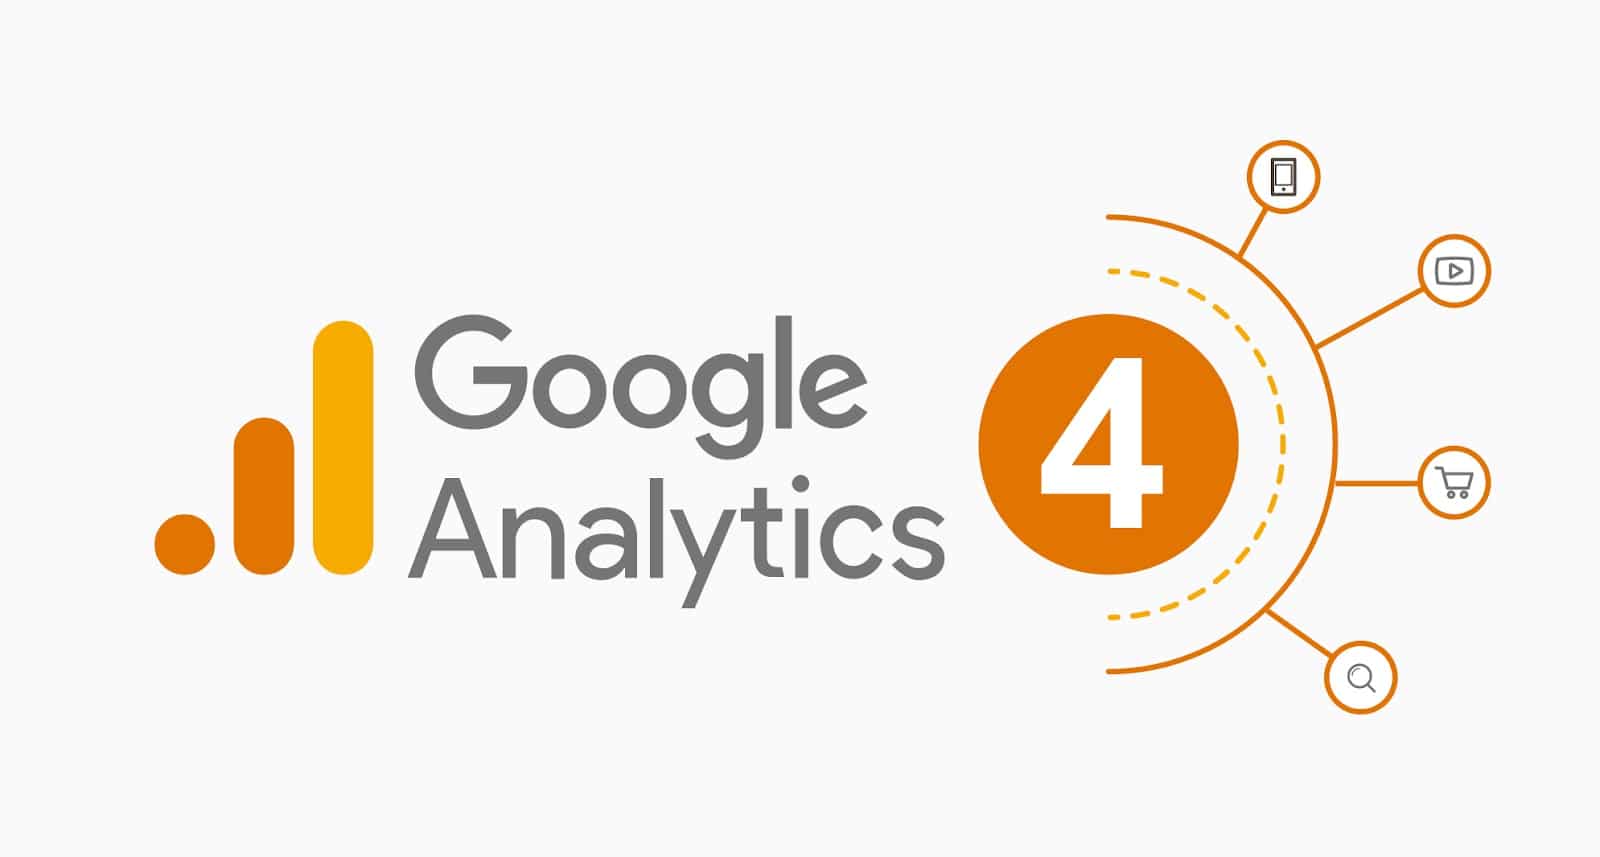 O Google Analytics 4 adiciona novas dimensões para medir o tráfego pago e orgânico